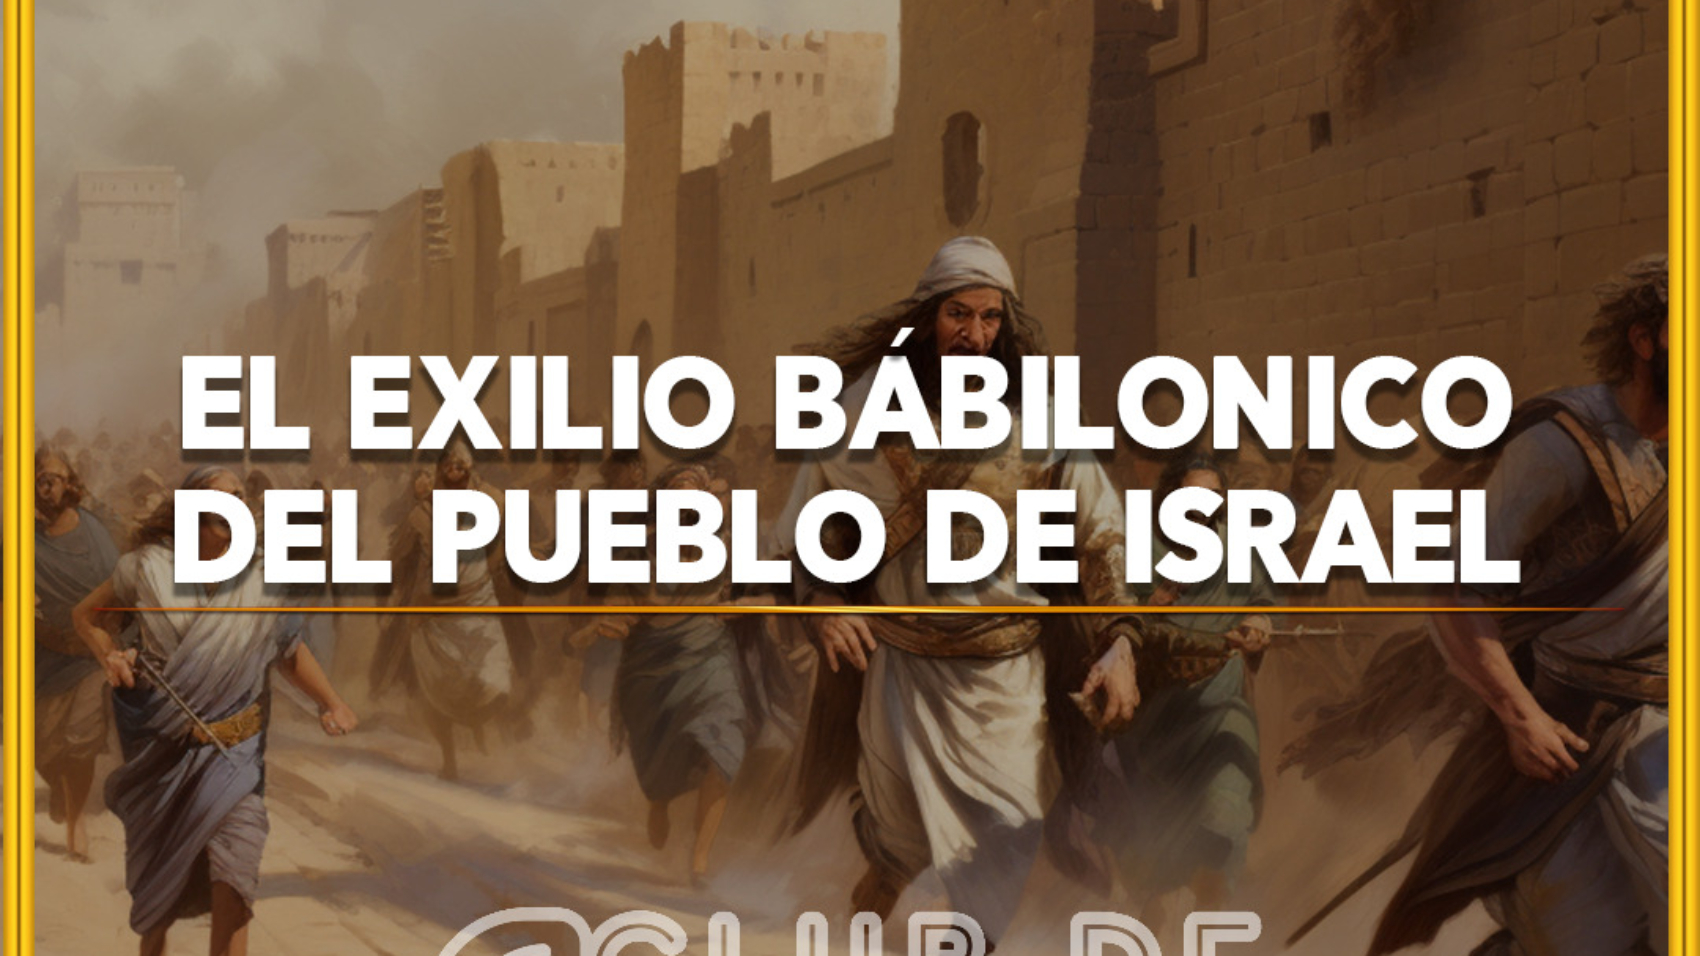 Exilio bábilonico del pueblo de israel 1080 x 1080